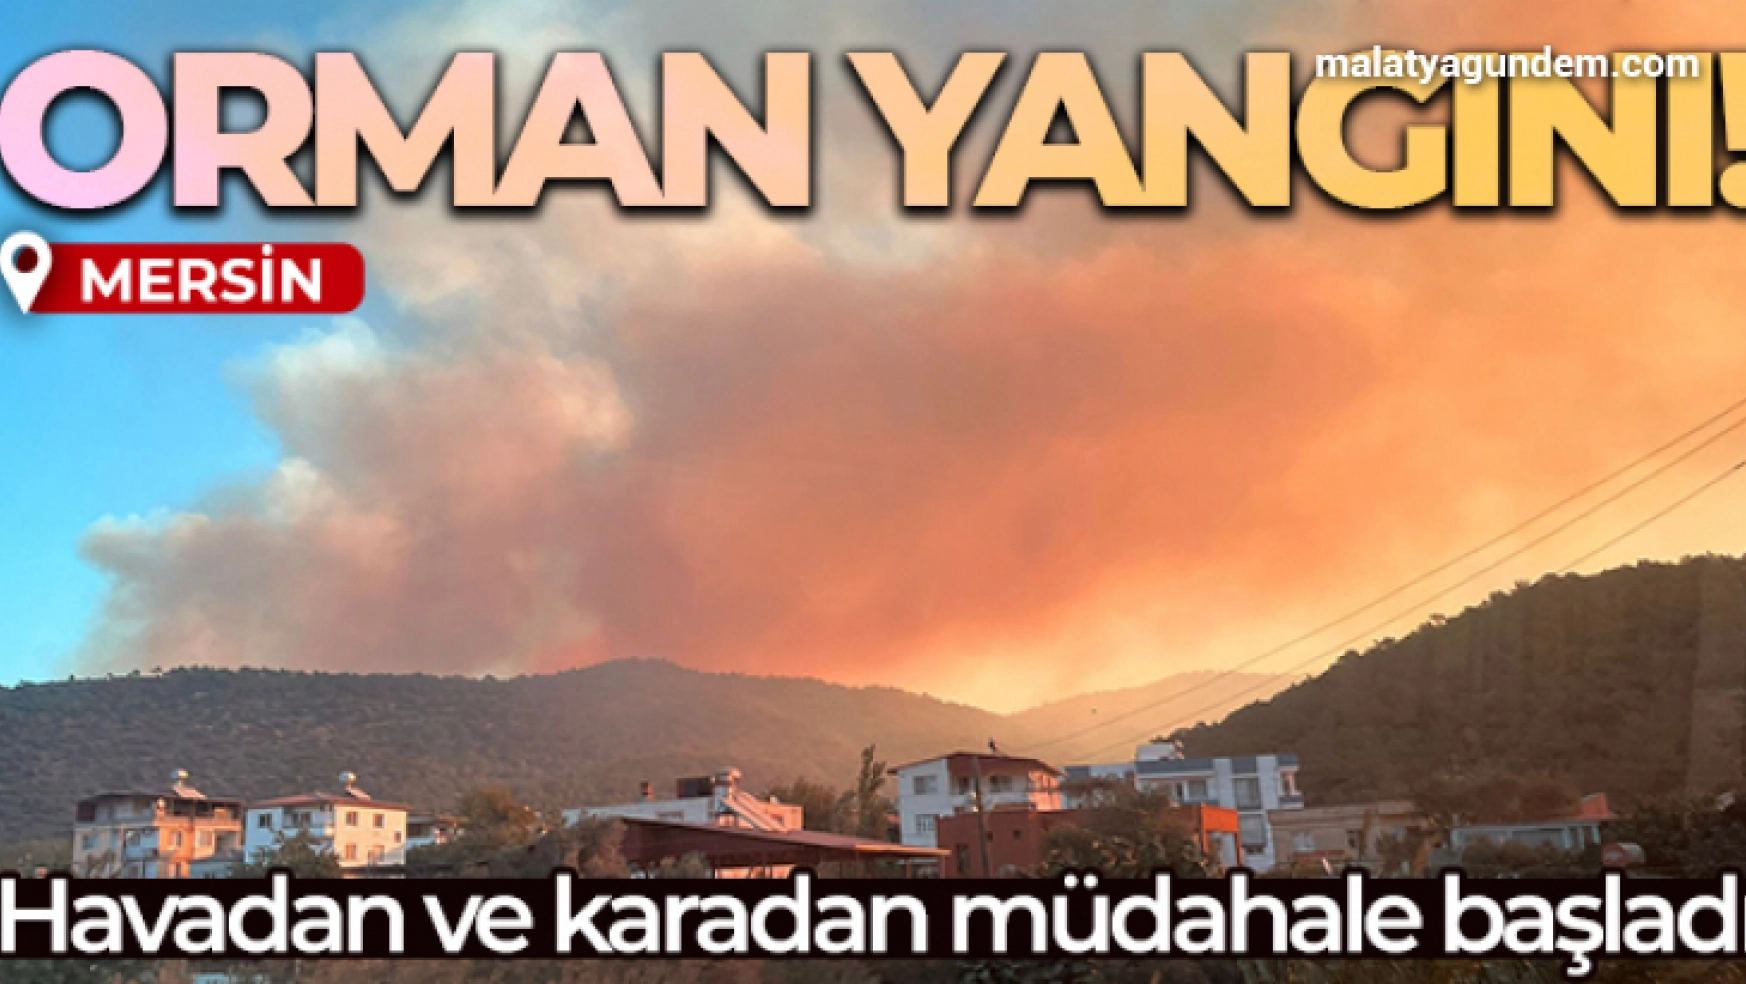 Mersin'de orman yangını: Havadan ve karadan müdahale için ekipler harekete geçtiMersin'de orman yangını: Havadan ve karadan müdahale için ekipler harekete geçti